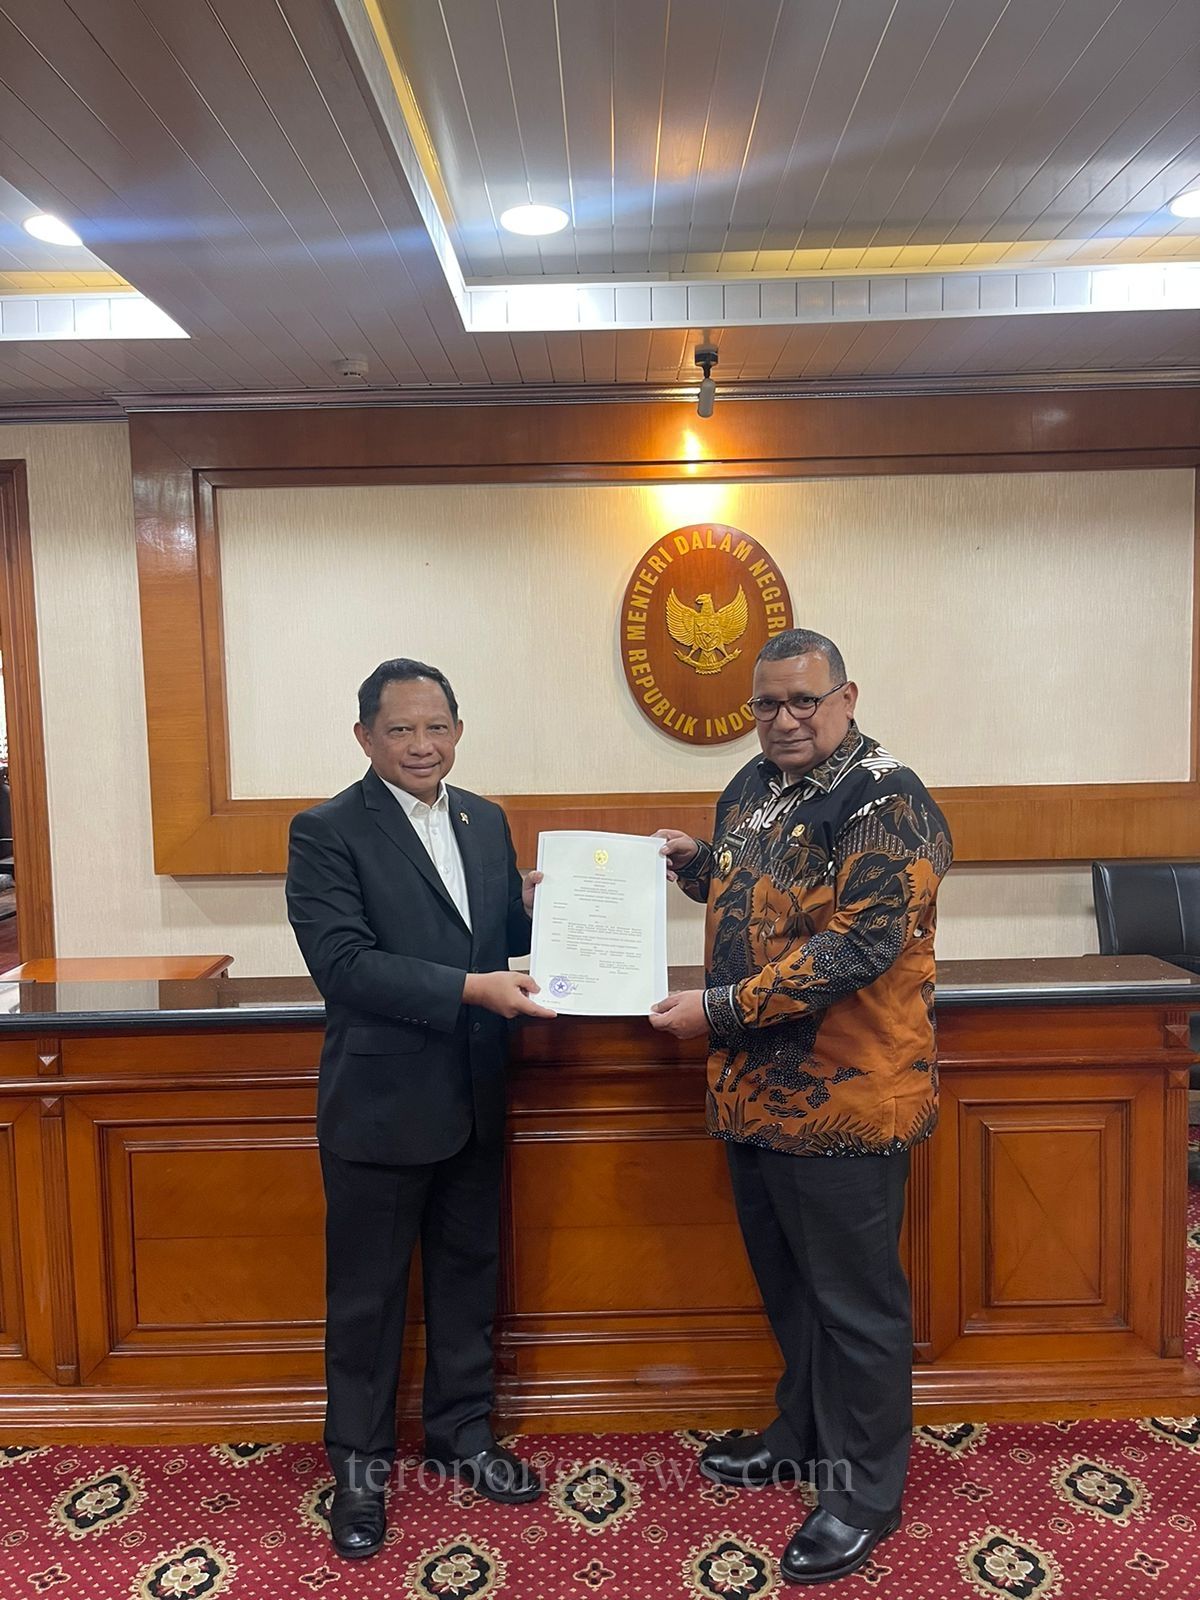 Kemendagri Perpanjang SK PJ Gubernur Papua Barat Daya. Mus’ad : Syukur dan Terimakasih